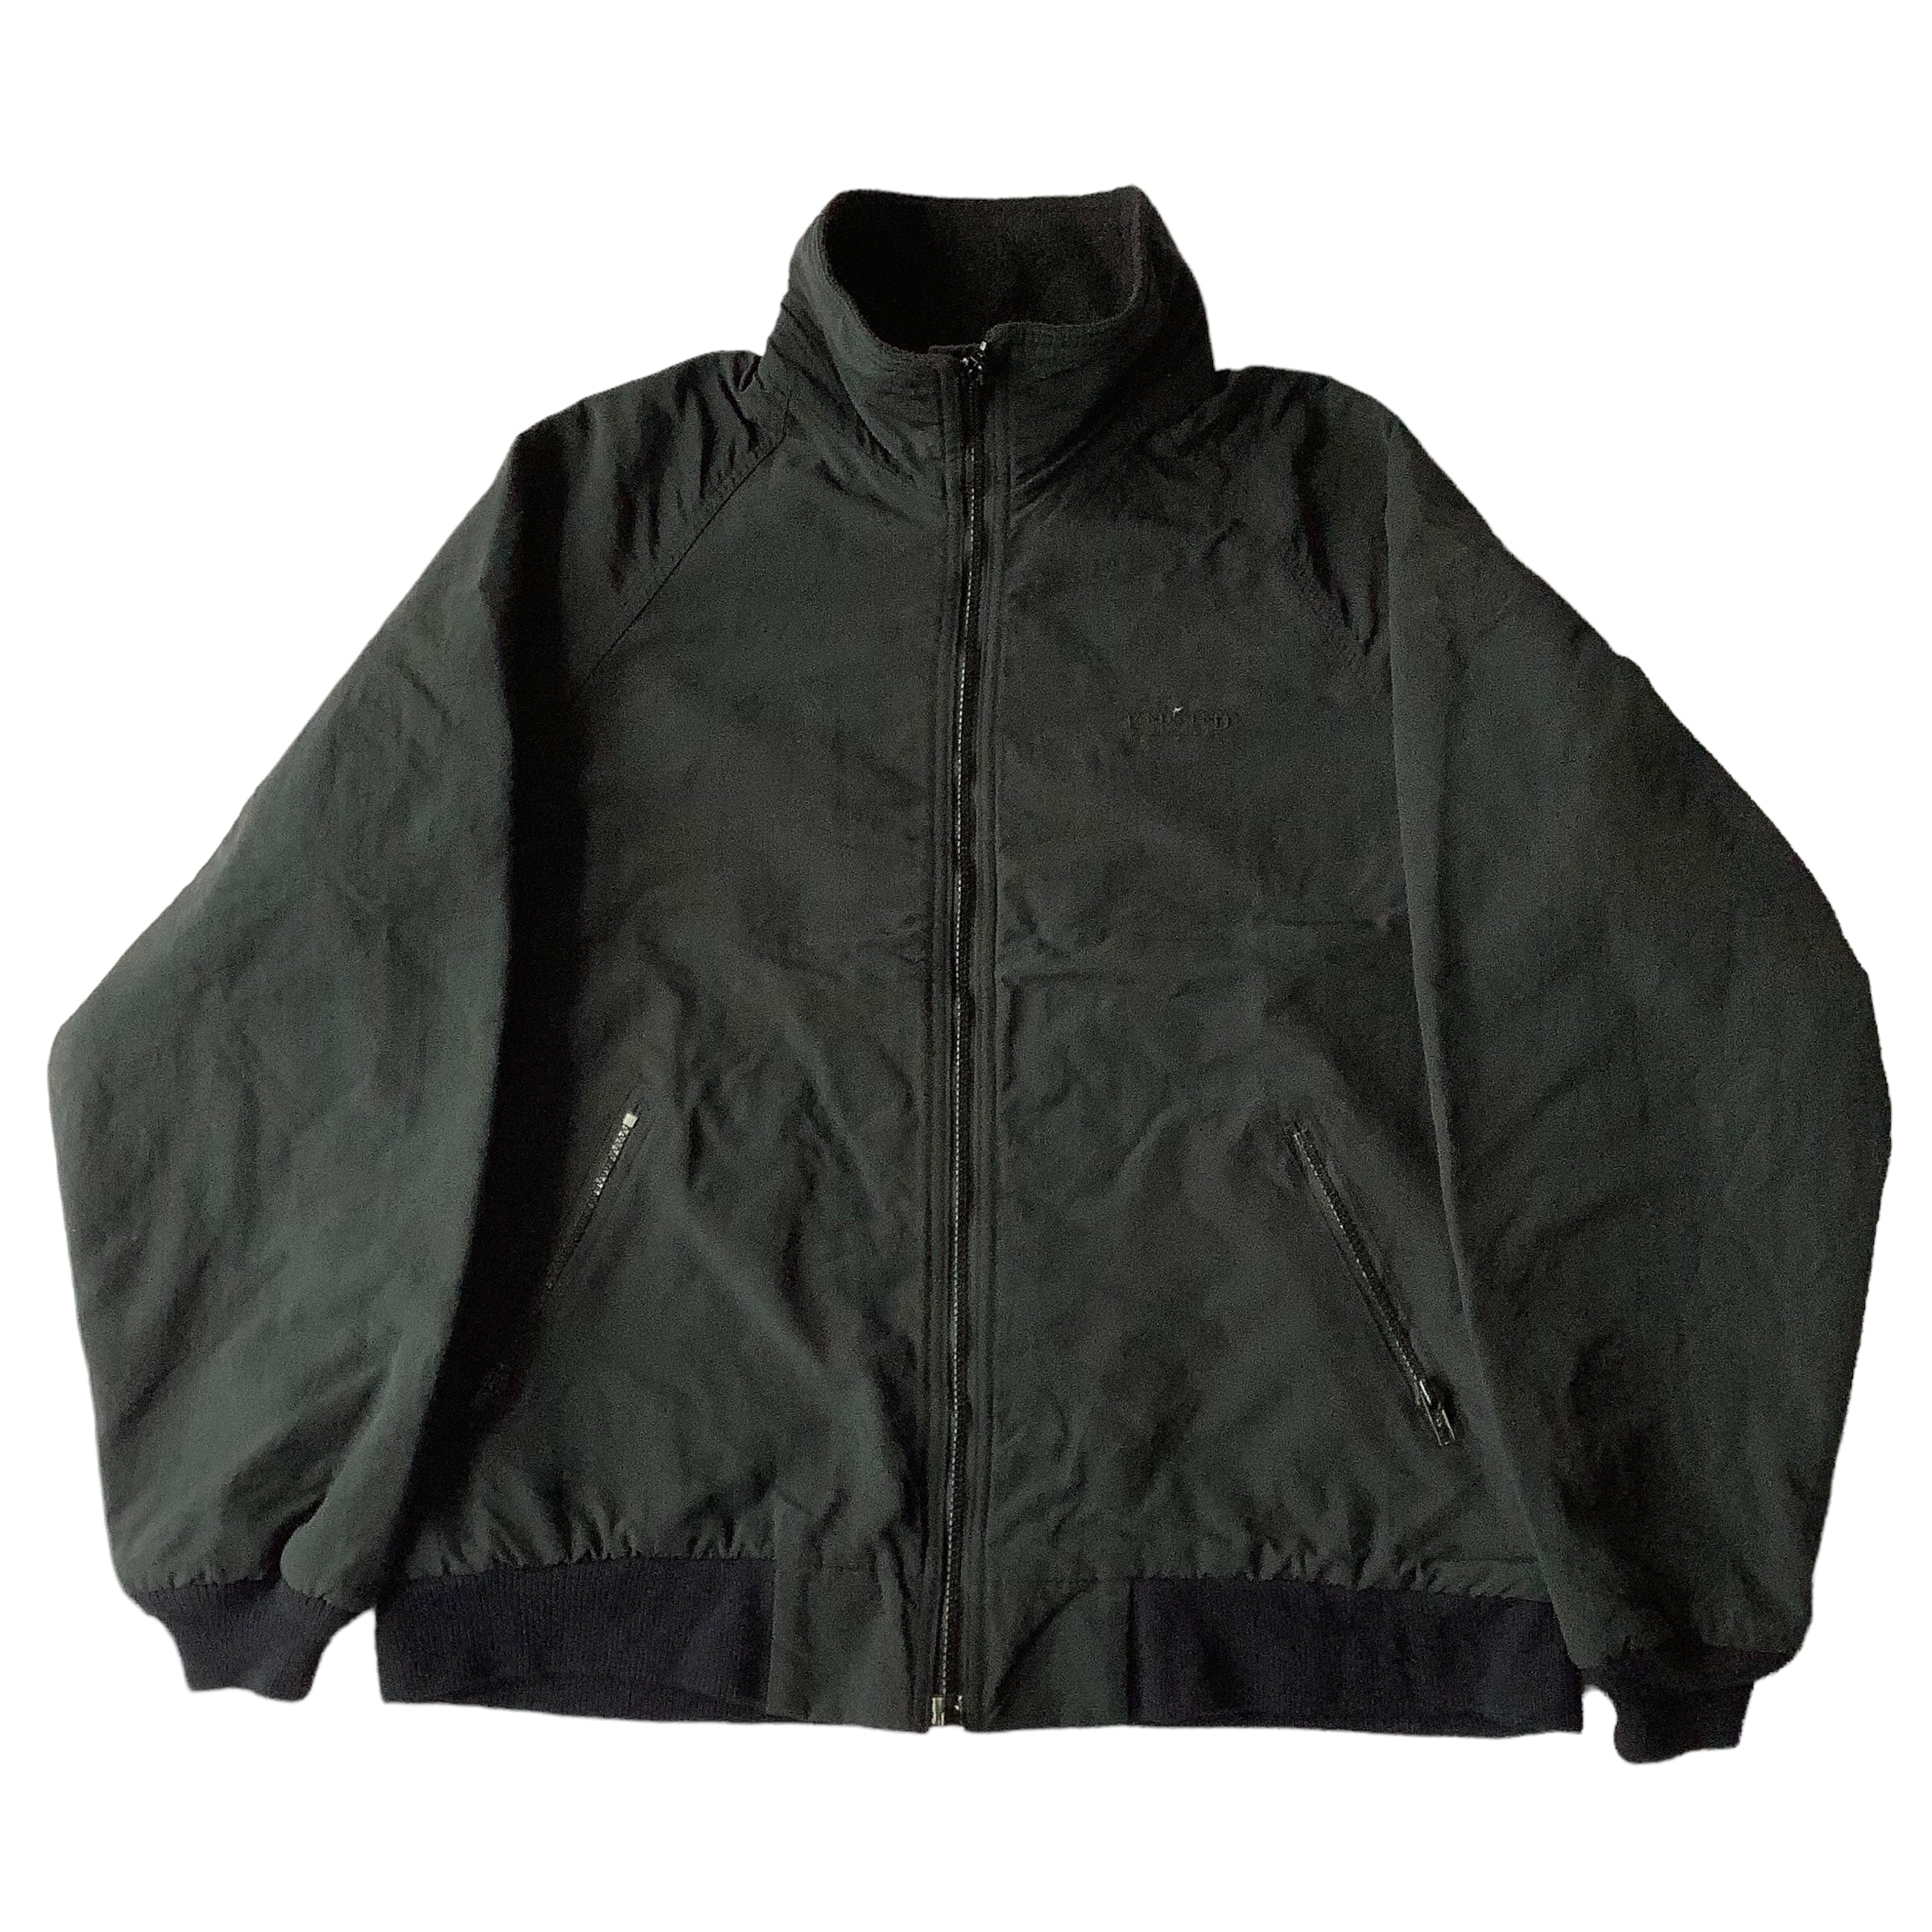 90s LAND'S END squall jacket nylon fleece | douraku. used clothing